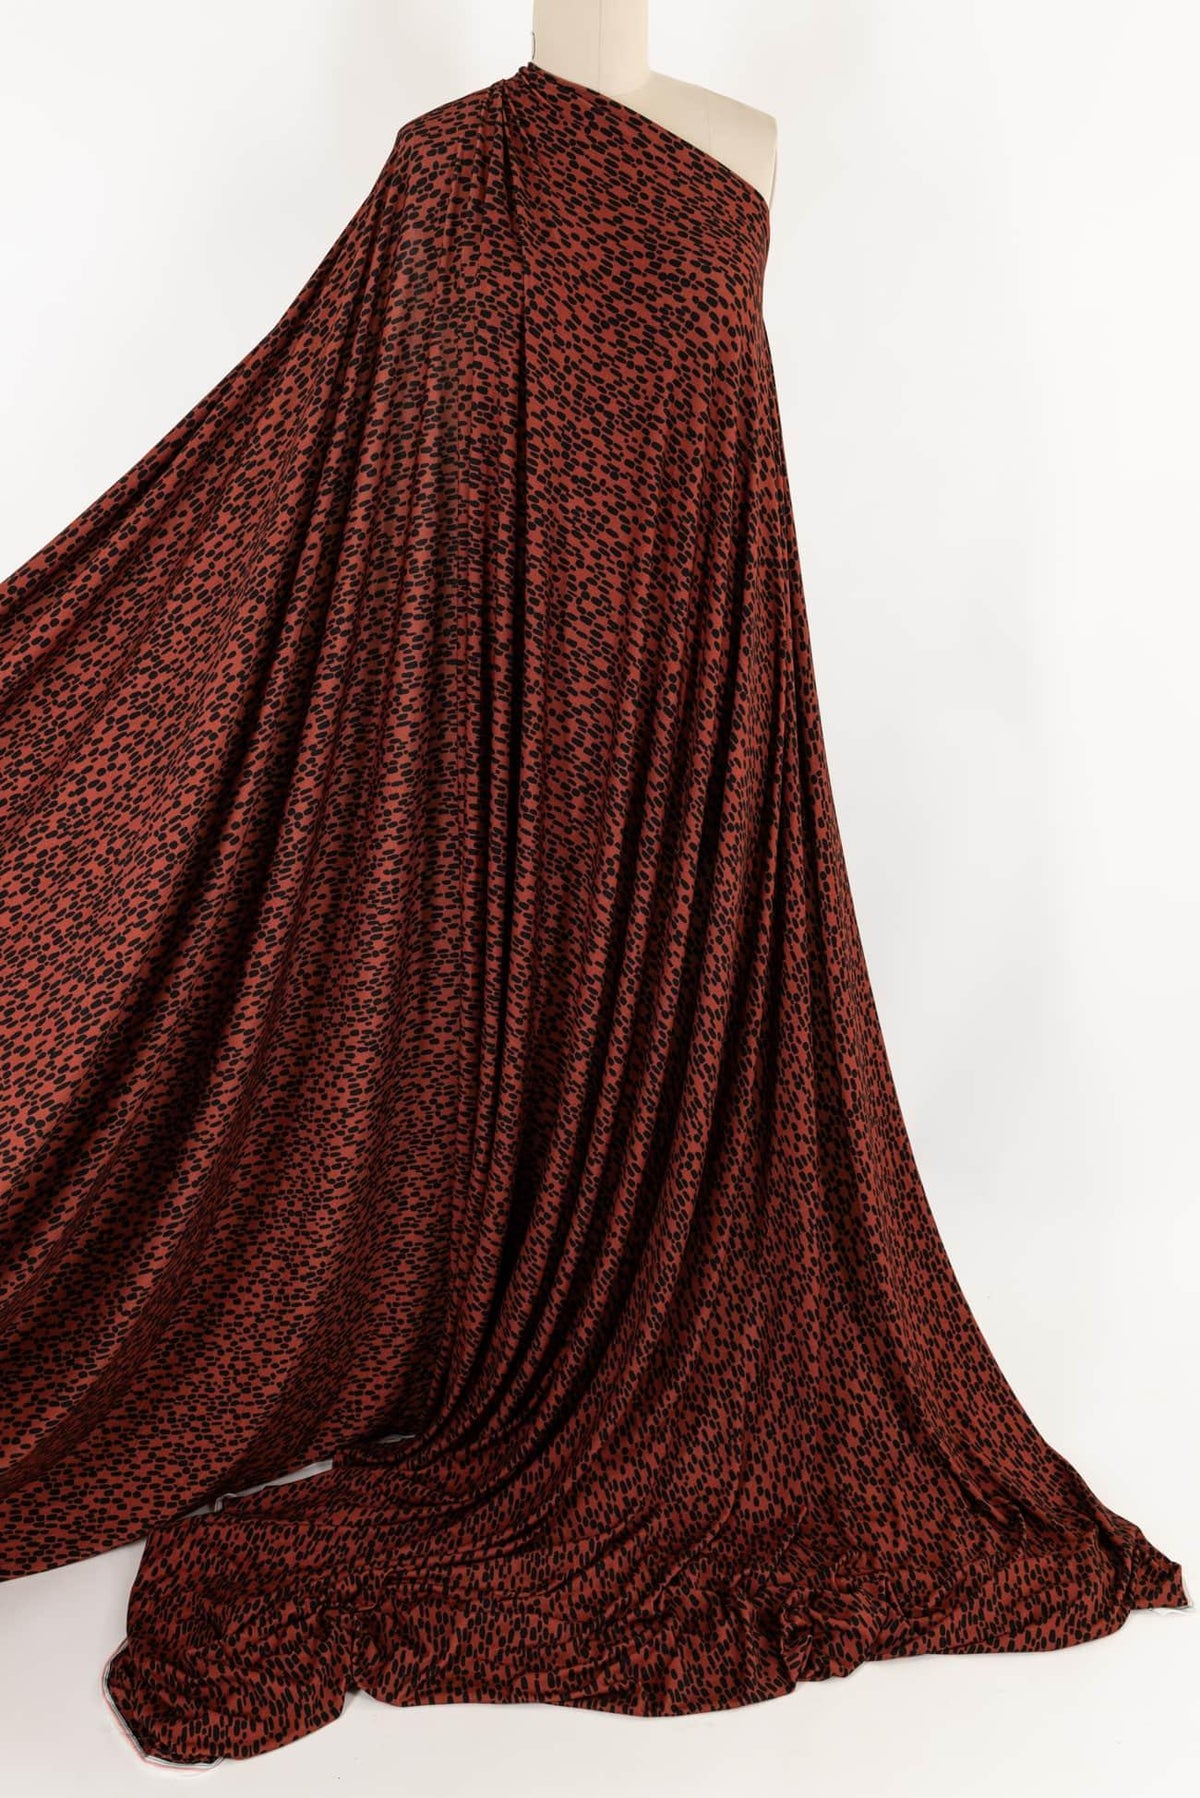 Jeremy Rayon Knit - Marcy Tilton Fabrics